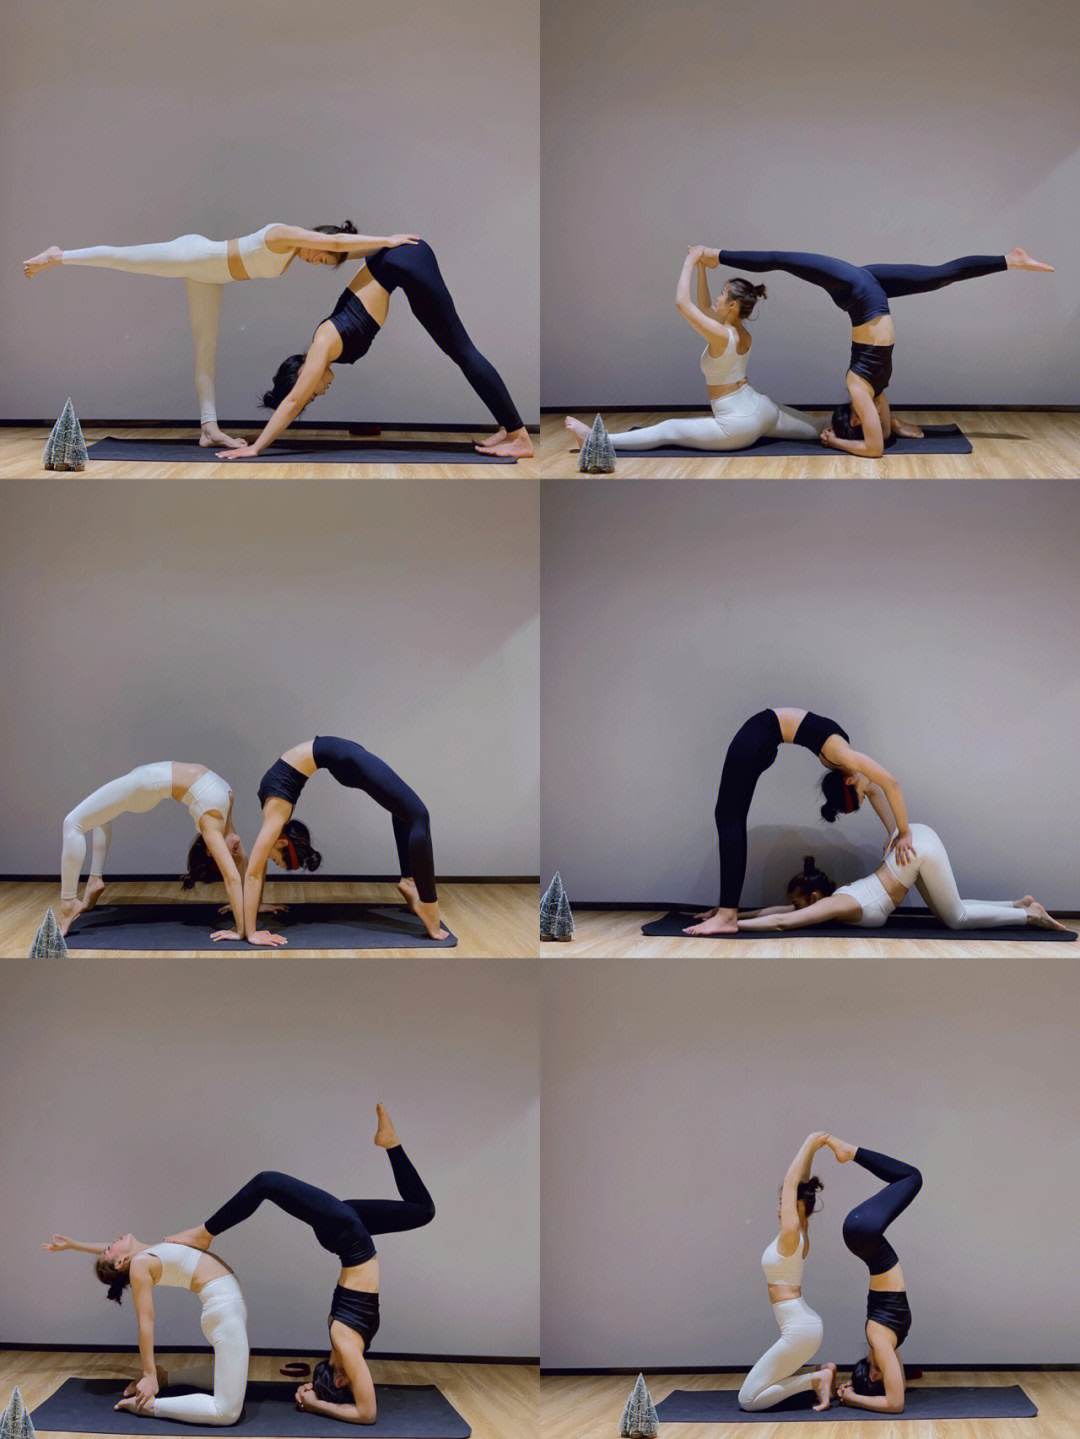 双人瑜伽简单动作图片